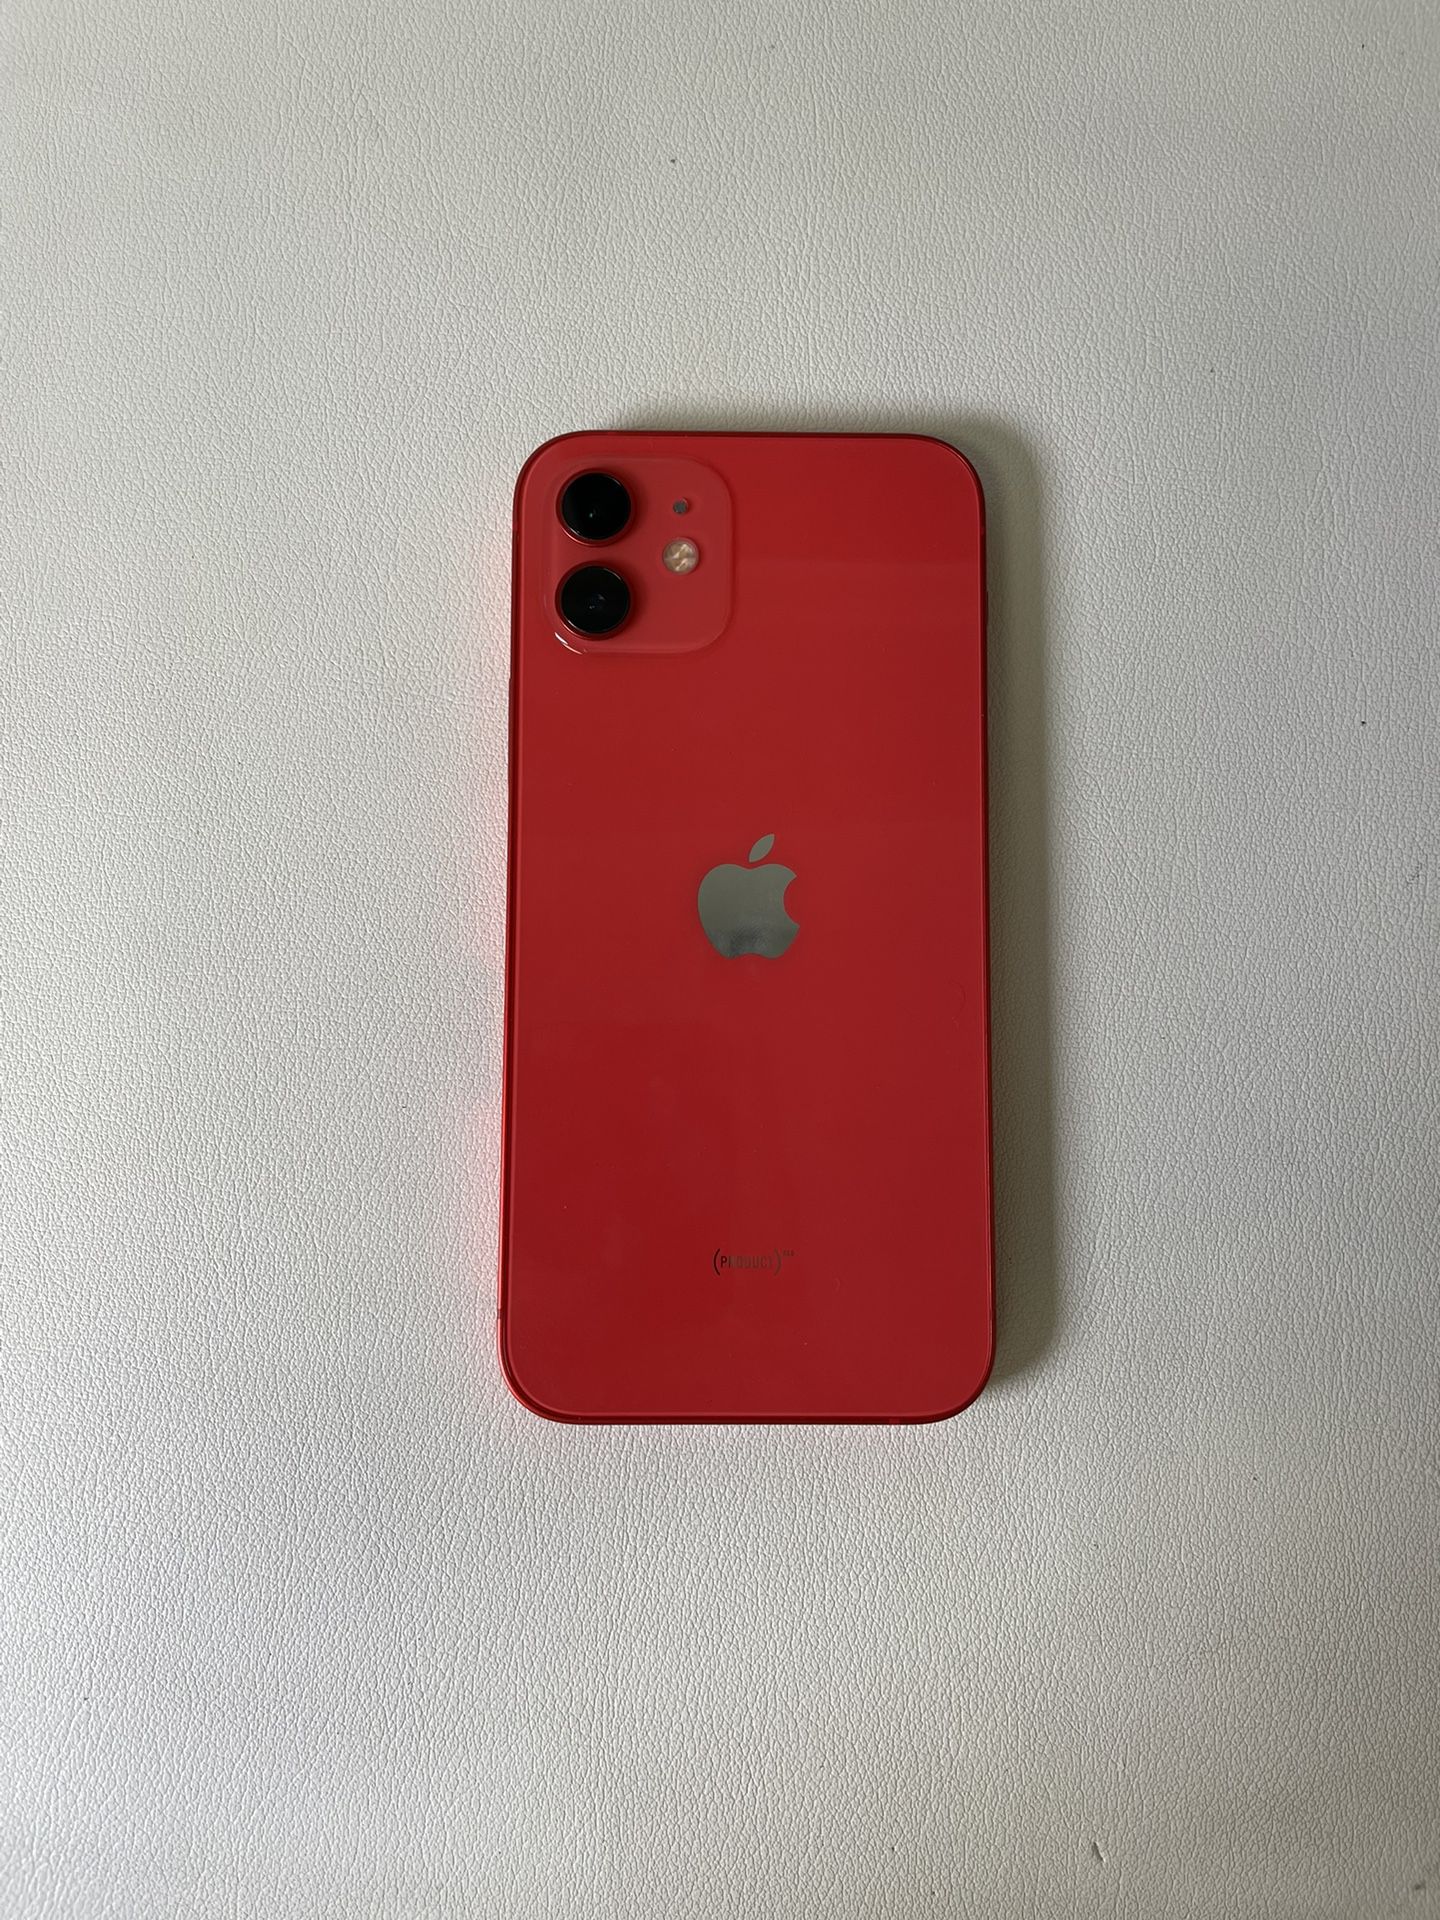 iPhone 12 Mini - AT&T/Cricket - 64GB 